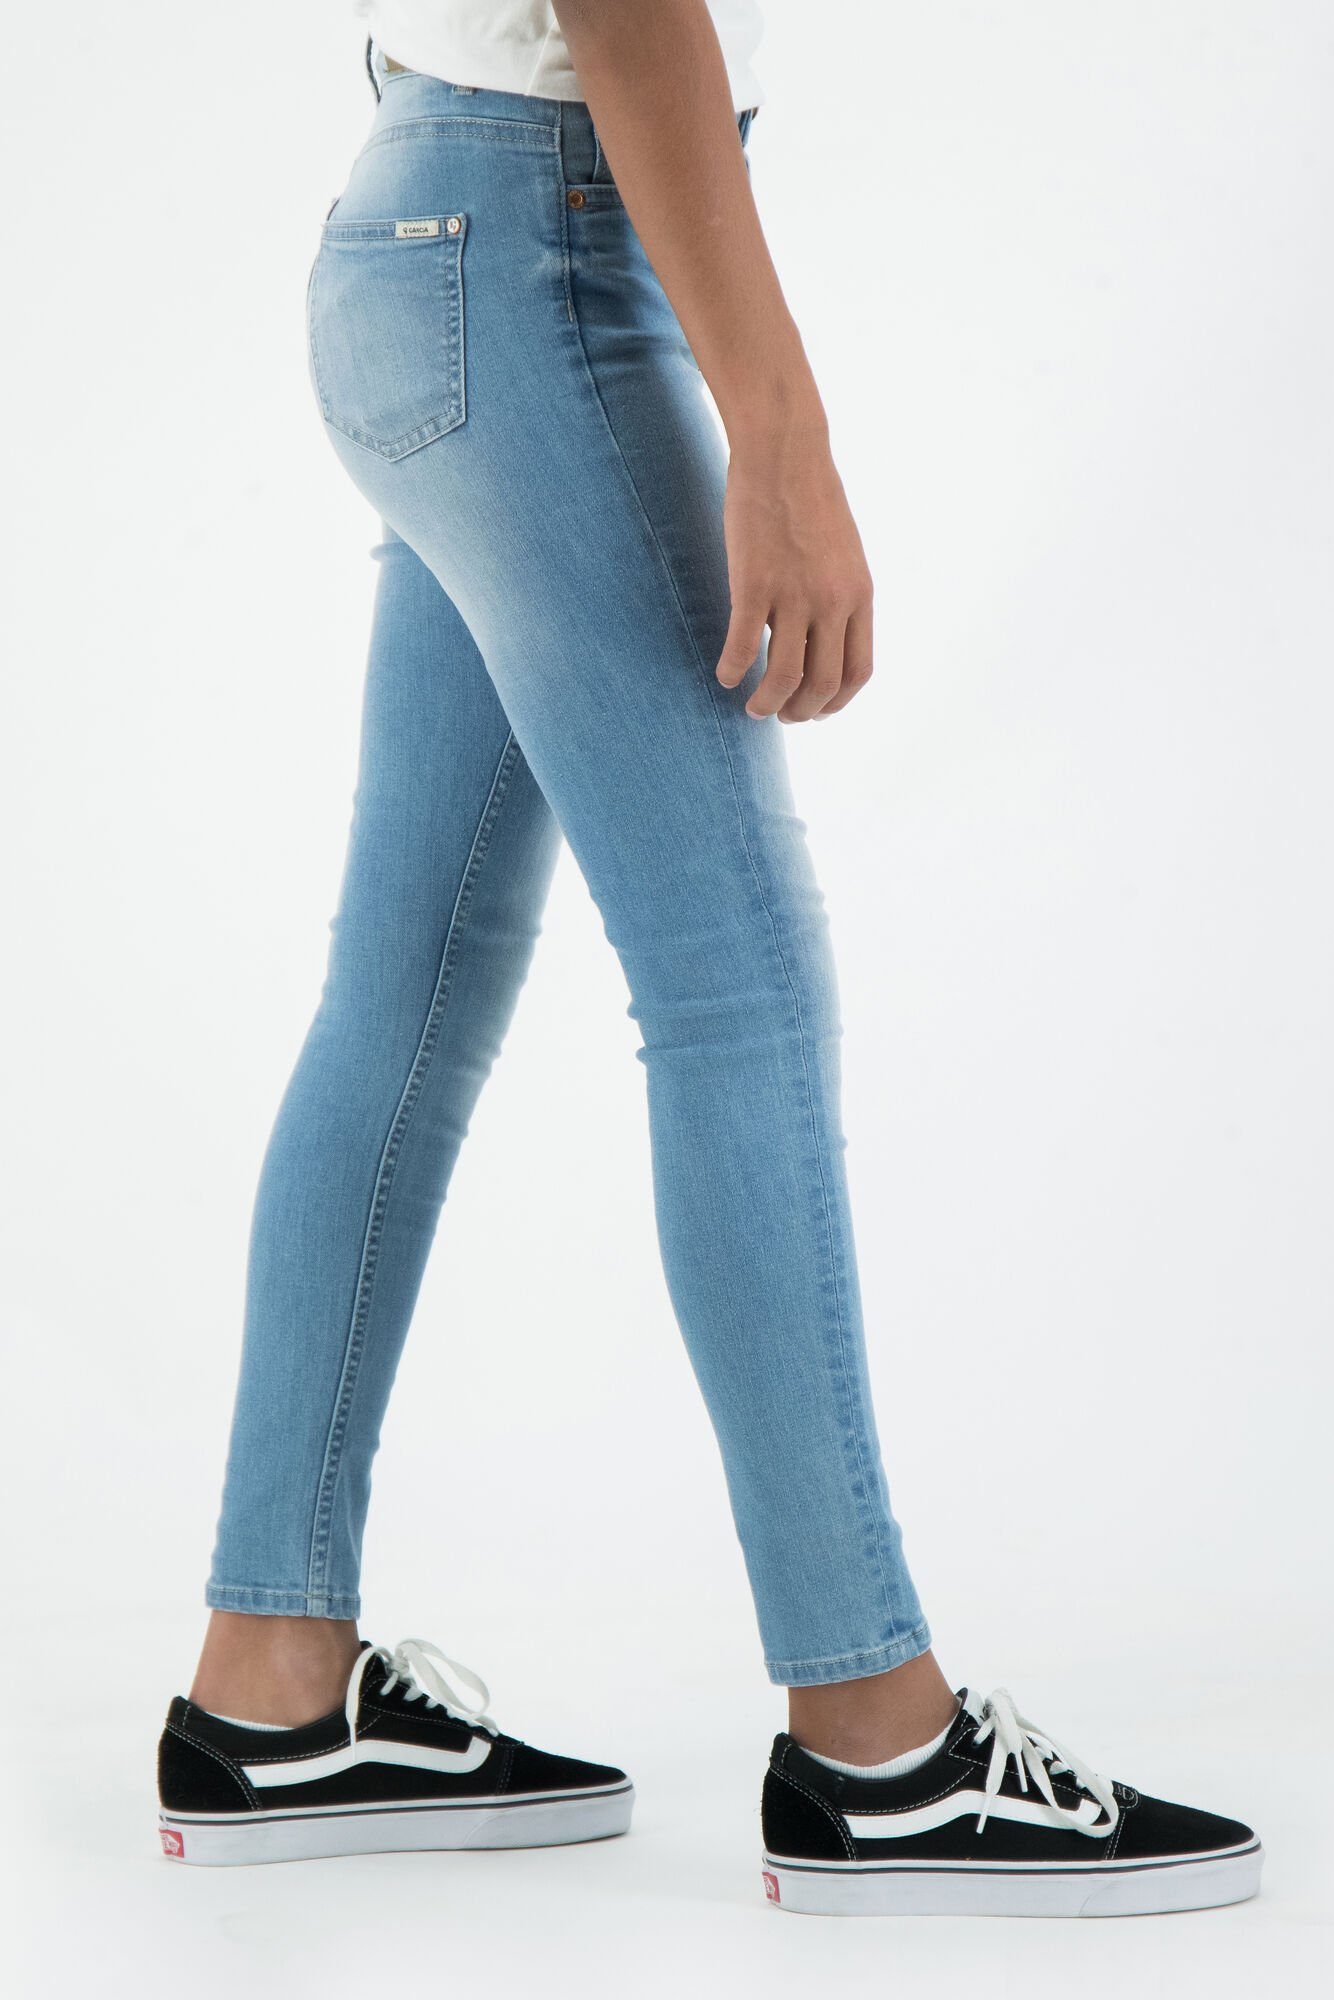 Sienna Jeans Slim-fit-Jeans Cropped Garcia superslim